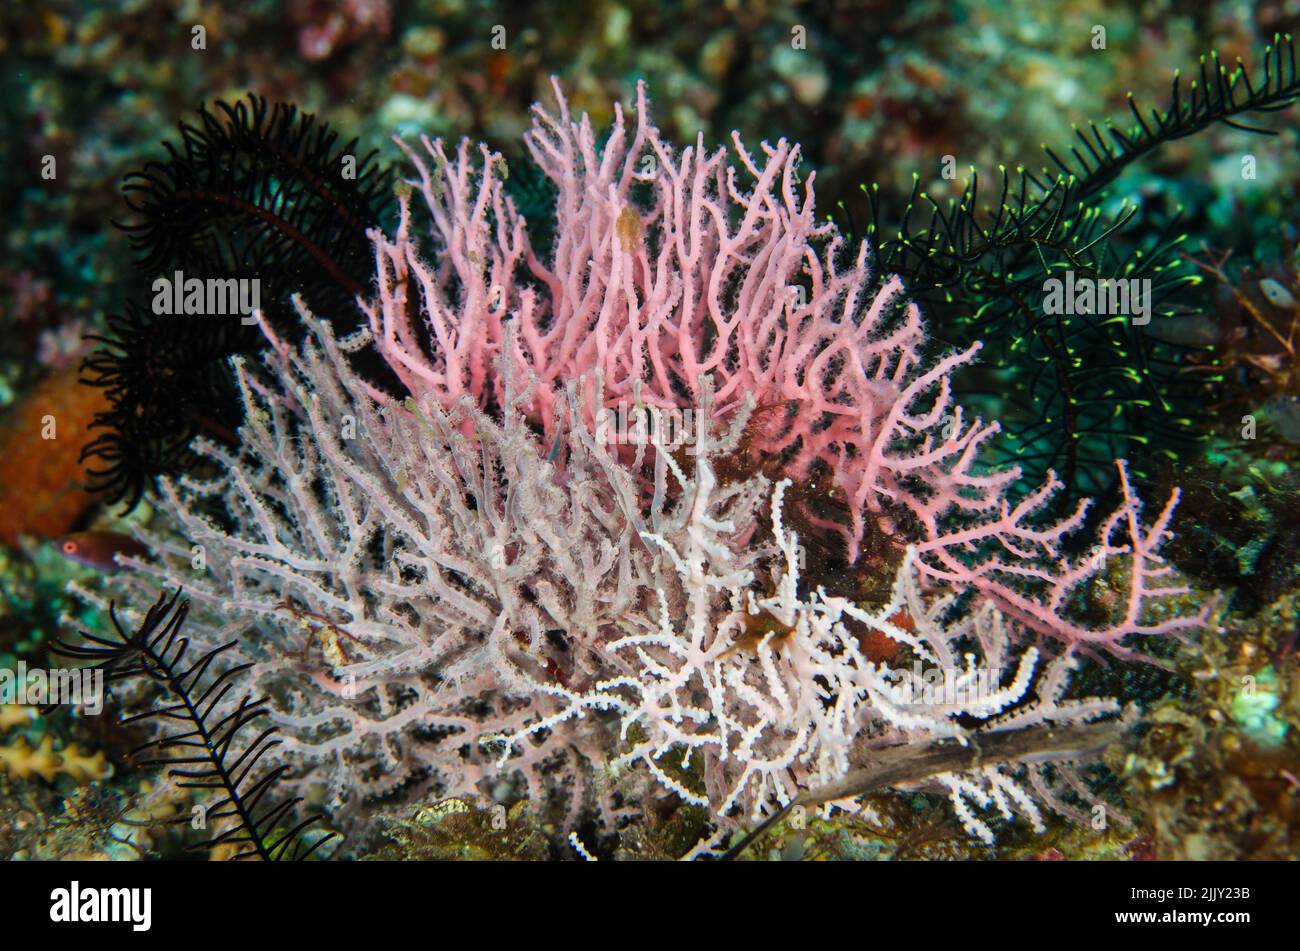 Coral de abanico anudado, Melithaea sp., Melithaeidae, Anilao, Batangas, Filipinas, Océano Indo-pacífico, Asia Foto de stock